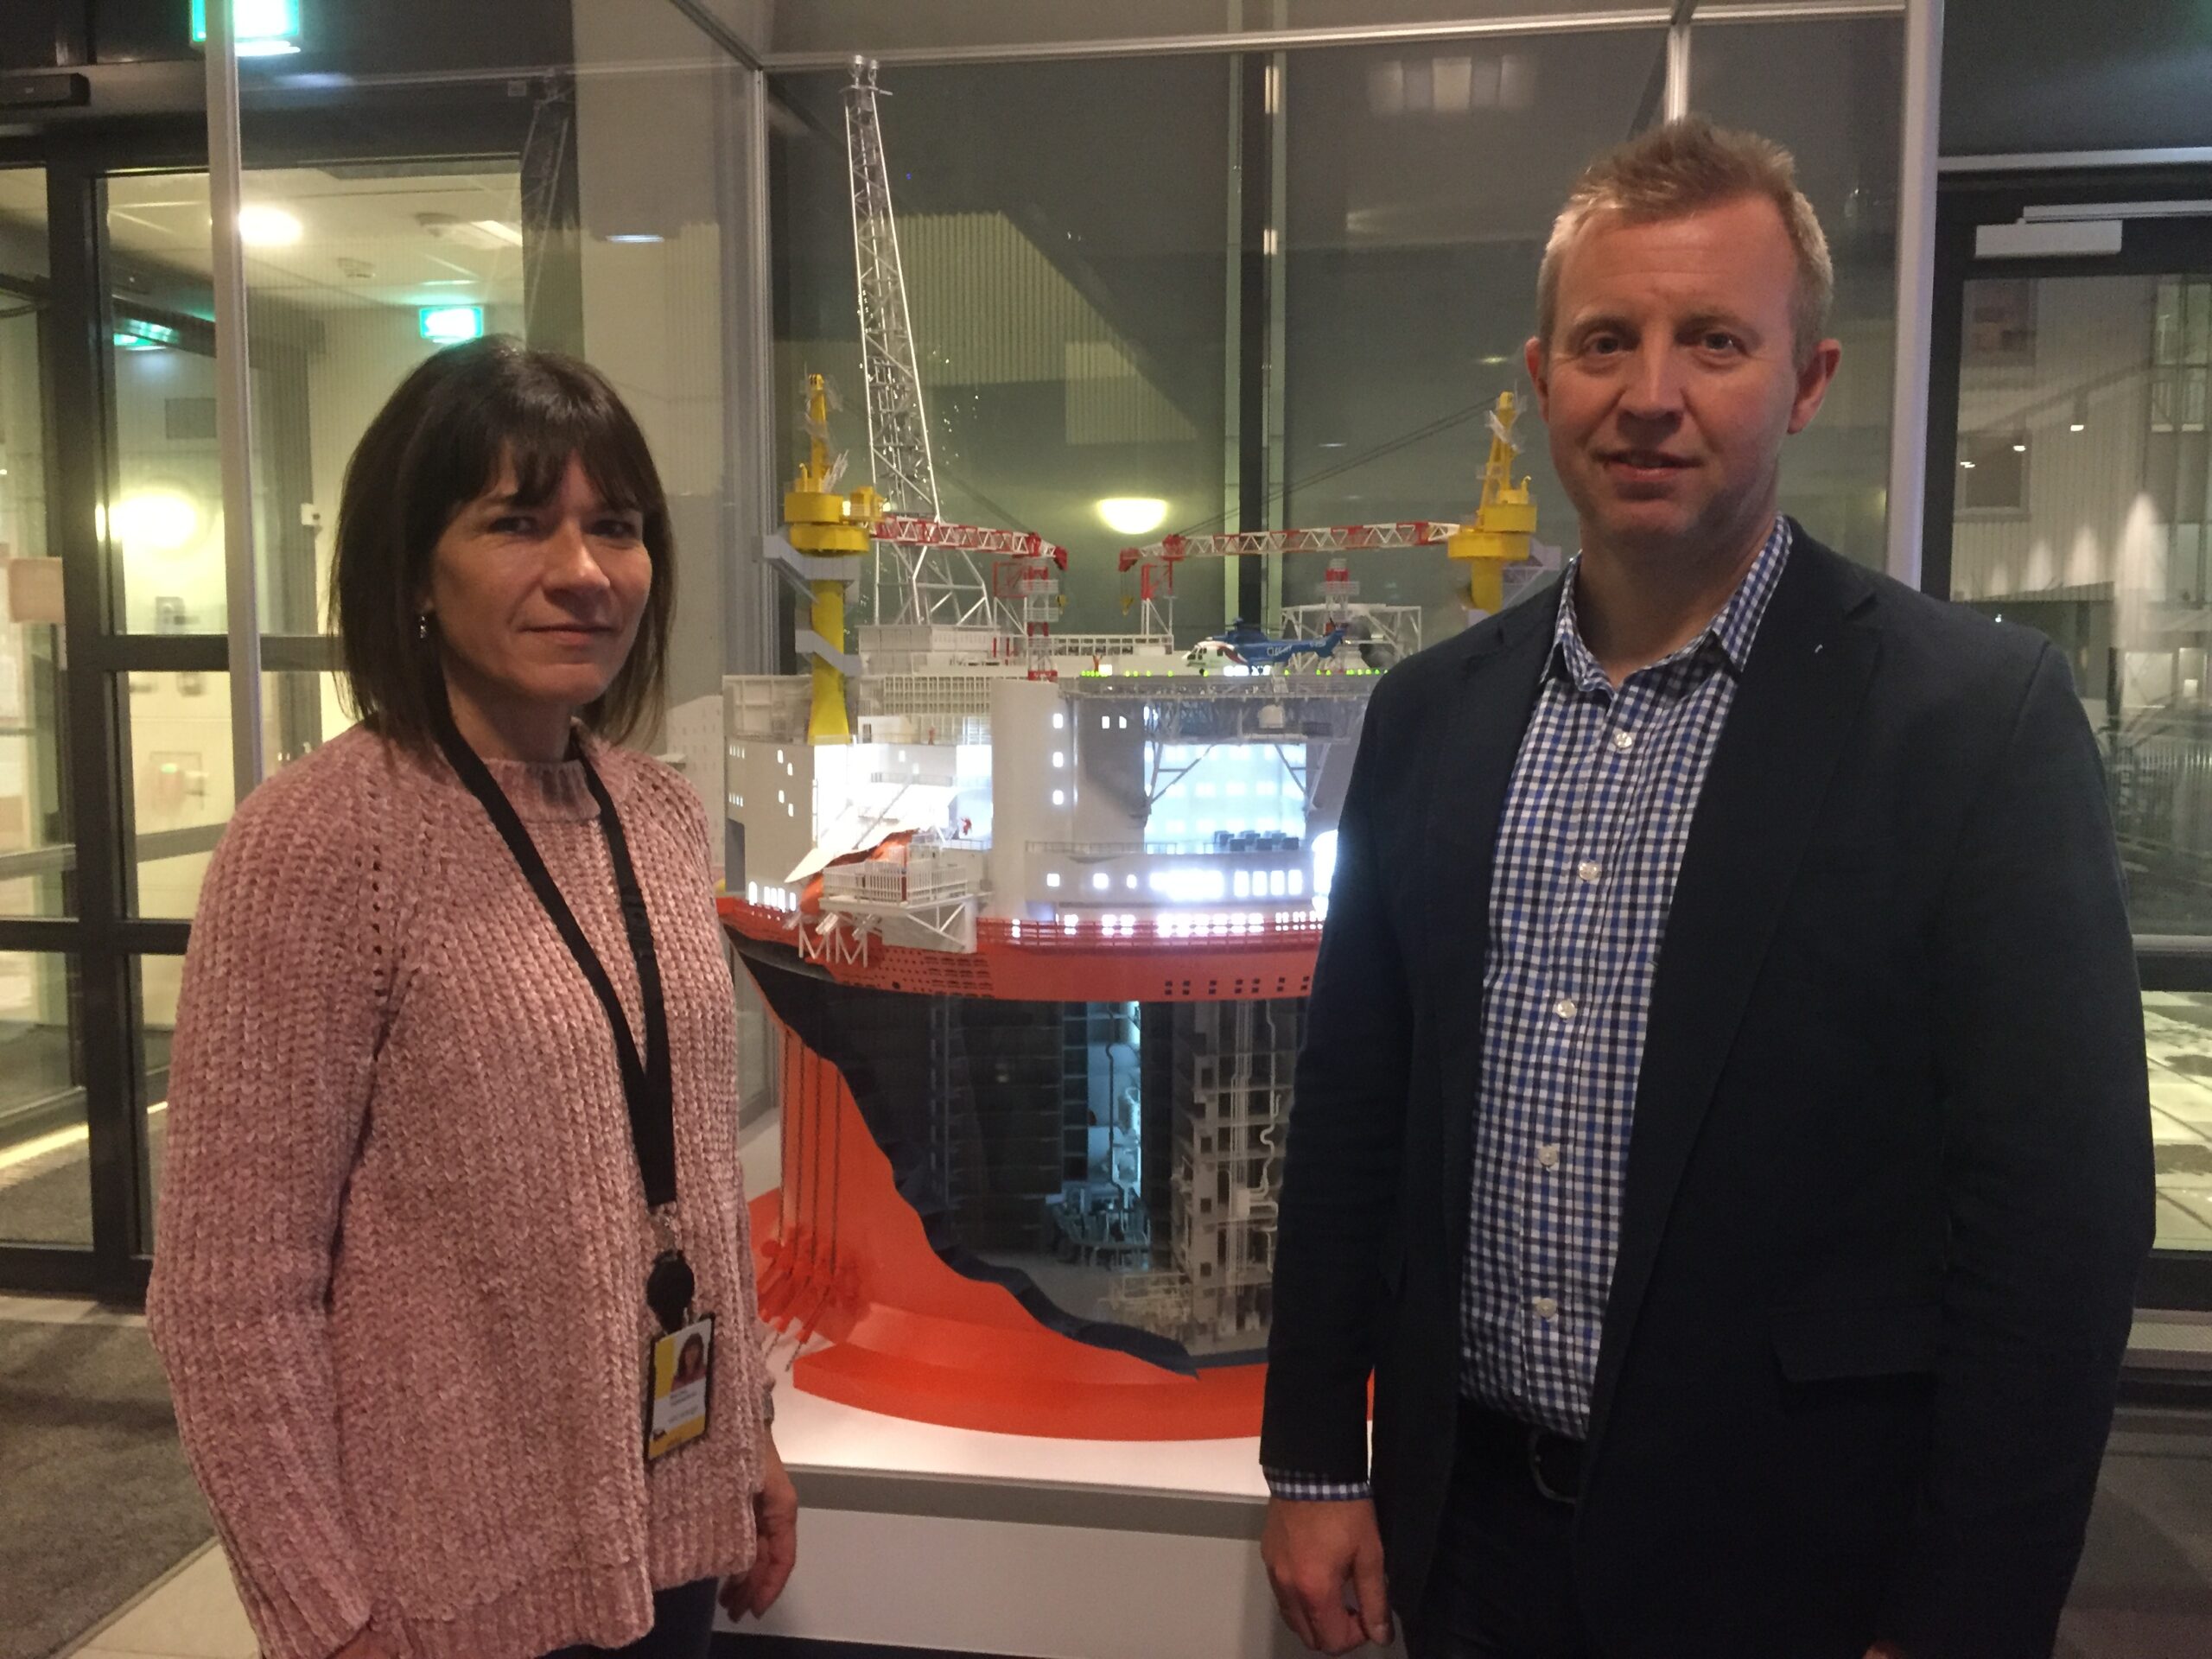 Forbundsleder Frode Alfheim i Industri Energi møtte hovedverneombud og klubbleder Industri Energi i Eni Norge Martha Skjæveland og de andre Goliat-ansatte i Hammerfest onsdag.